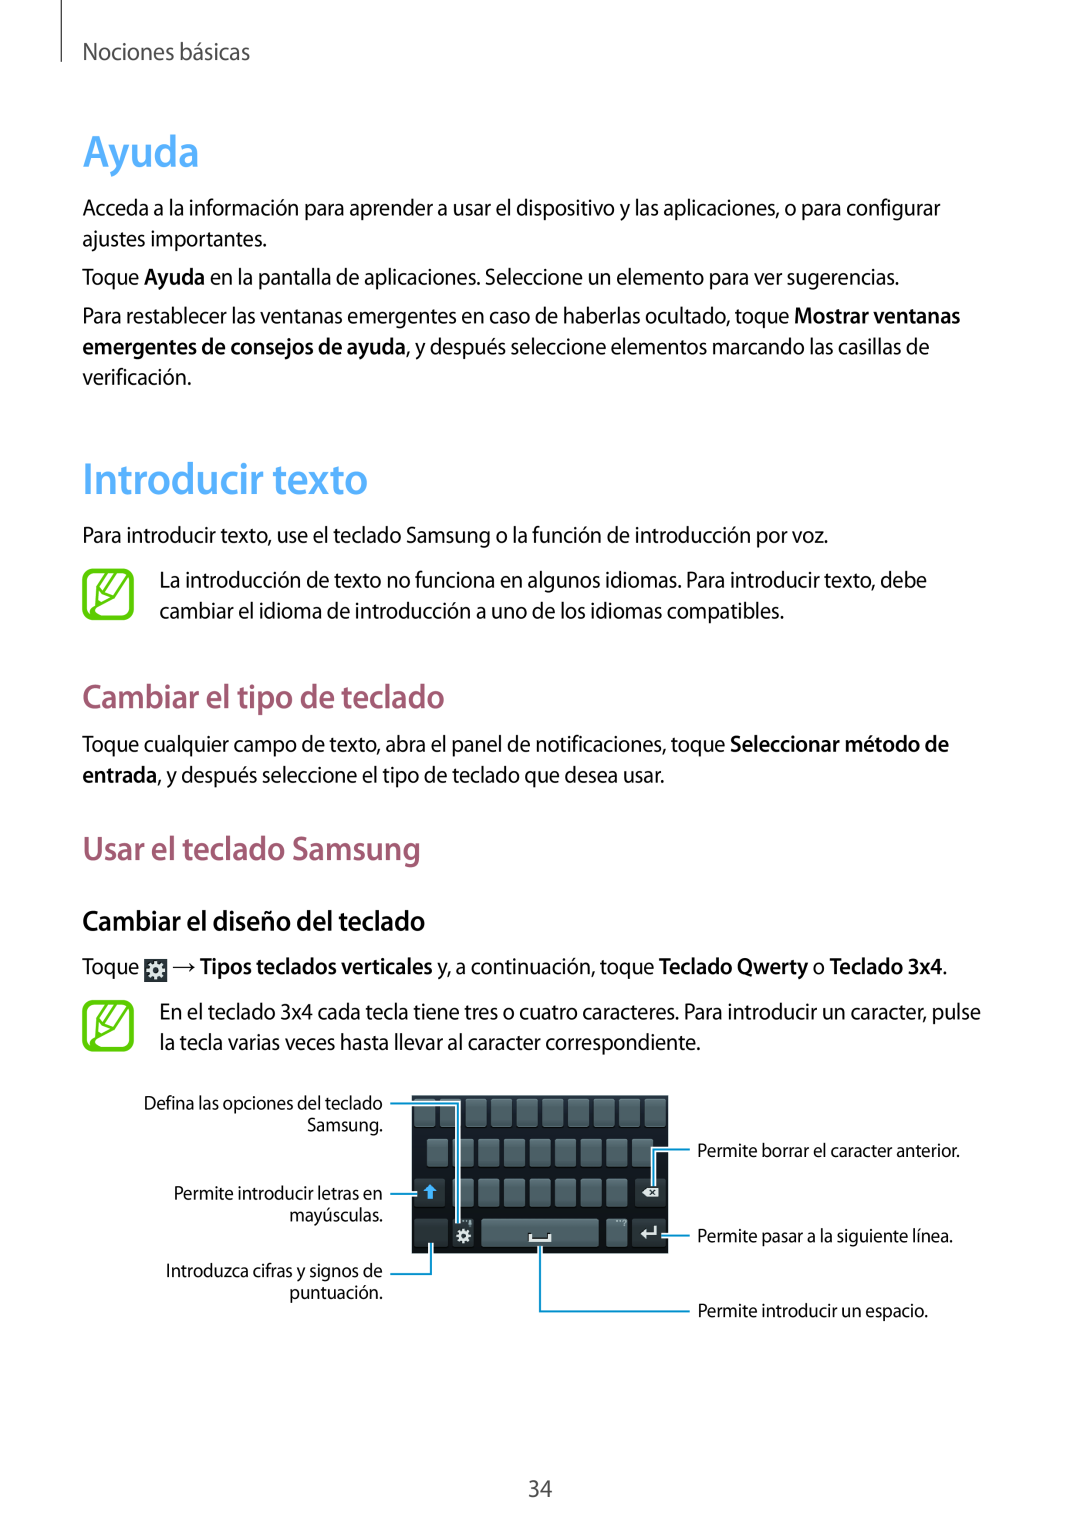 Samsung GT-I8730ZWAYOG Ayuda, Introducir texto, Cambiar el tipo de teclado, Usar el teclado Samsung, Nociones básicas 